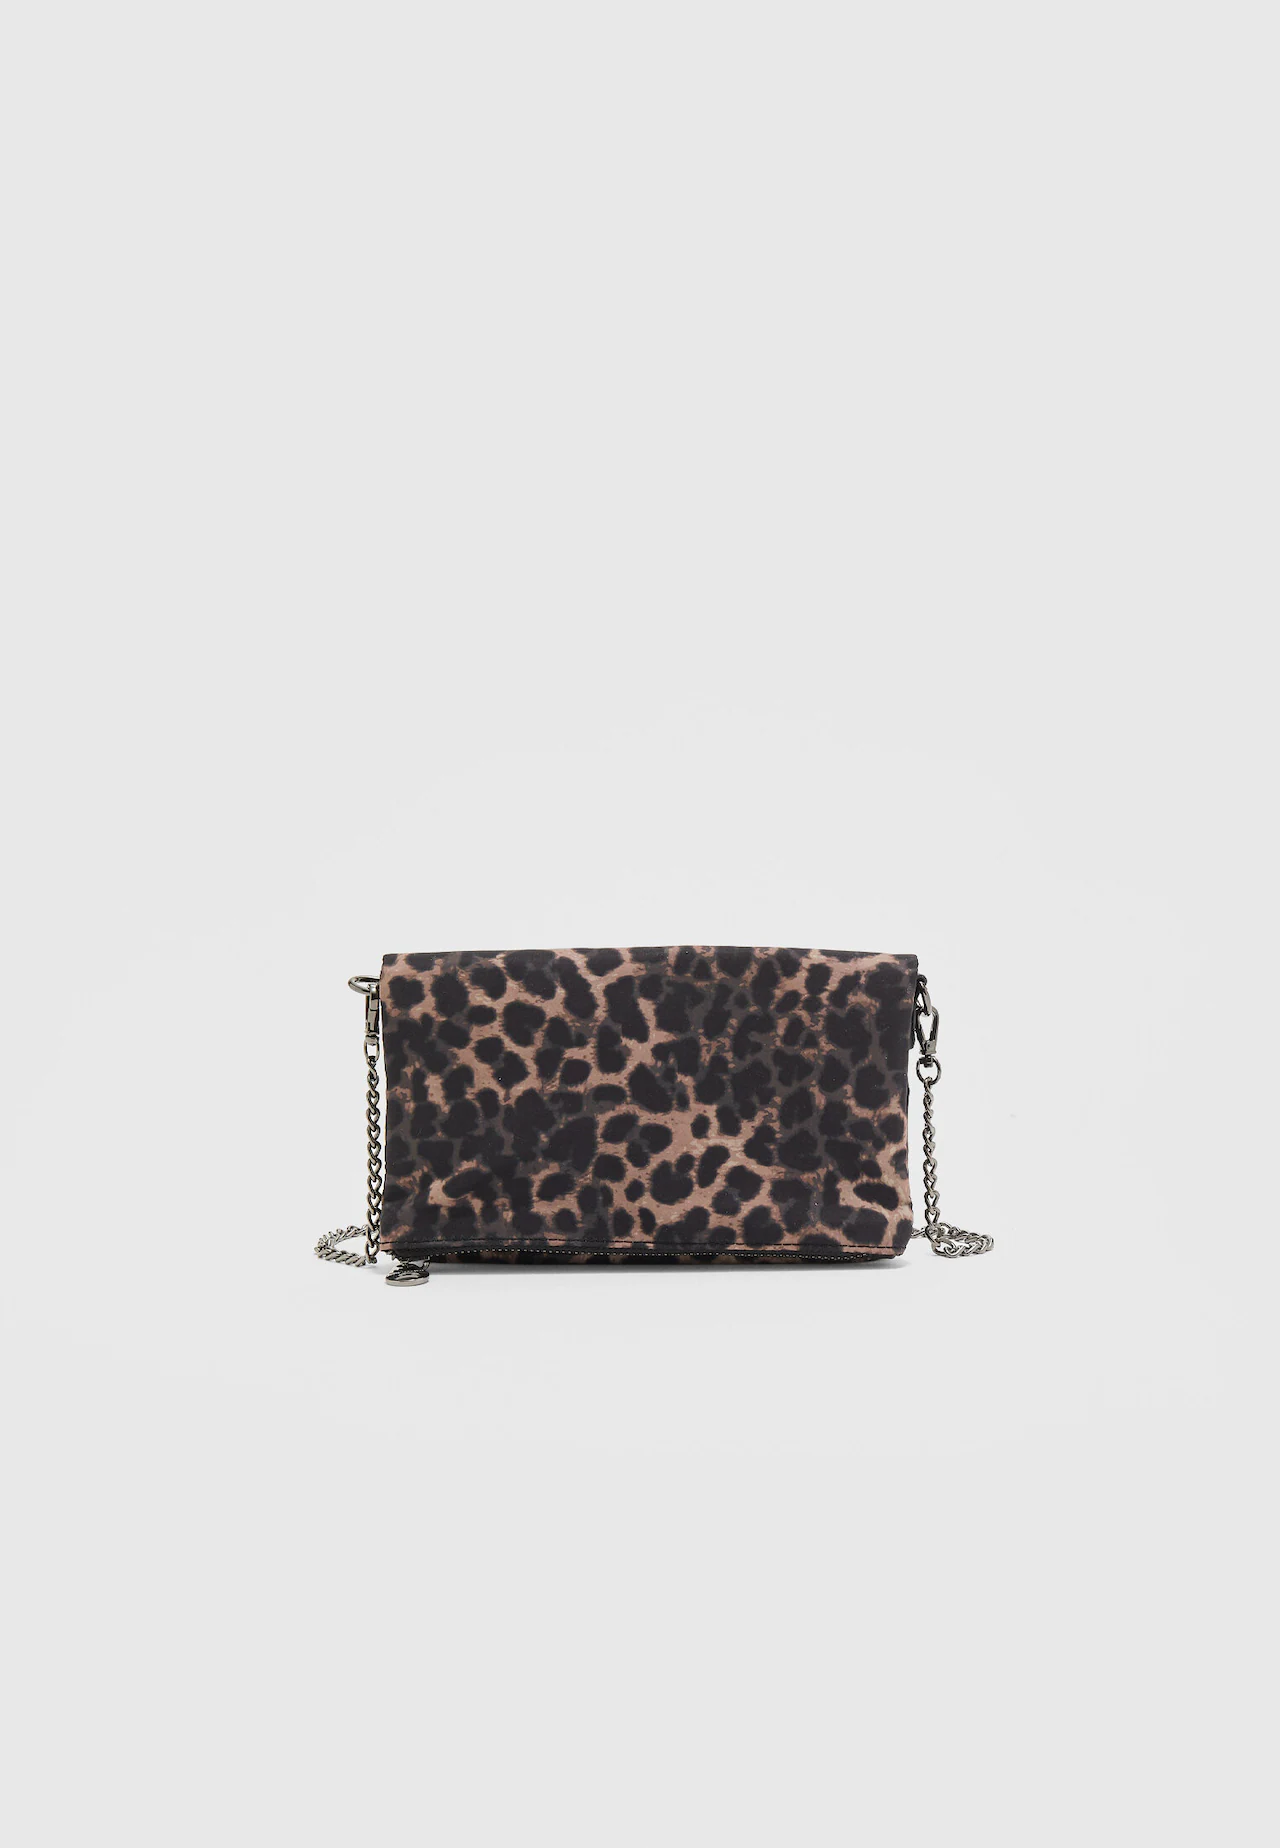 Leopard Print Louis Vuitton Purse